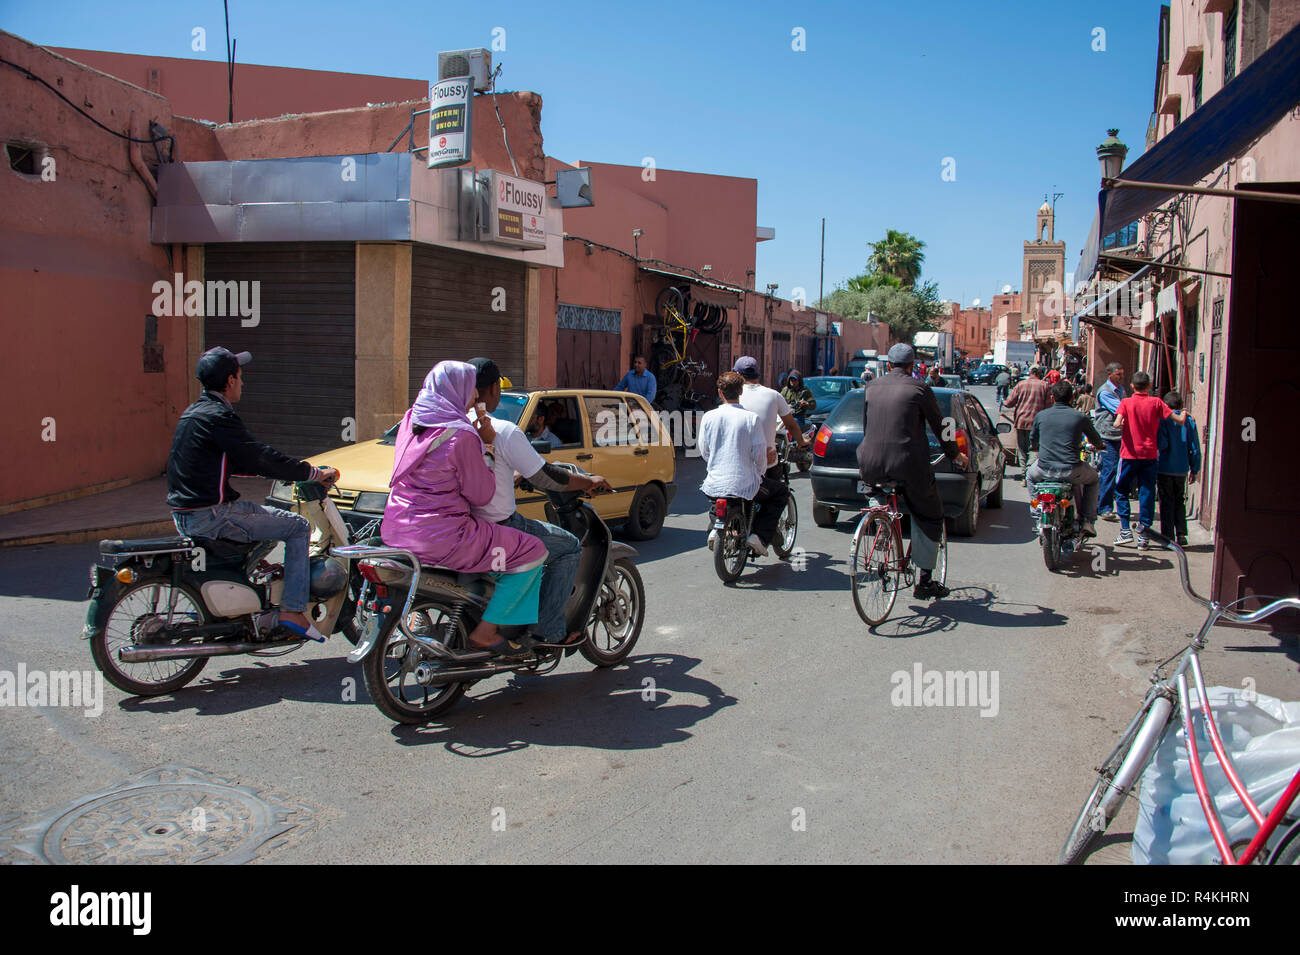 18-04-11. Marrakesch, Marokko. Eine geschäftige Straße Ecke außerhalb der Medina, mit Fußgängern, Autos, Mopeds und Motorroller alle konkurrierenden für den Weltraum. Foto © S Stockfoto